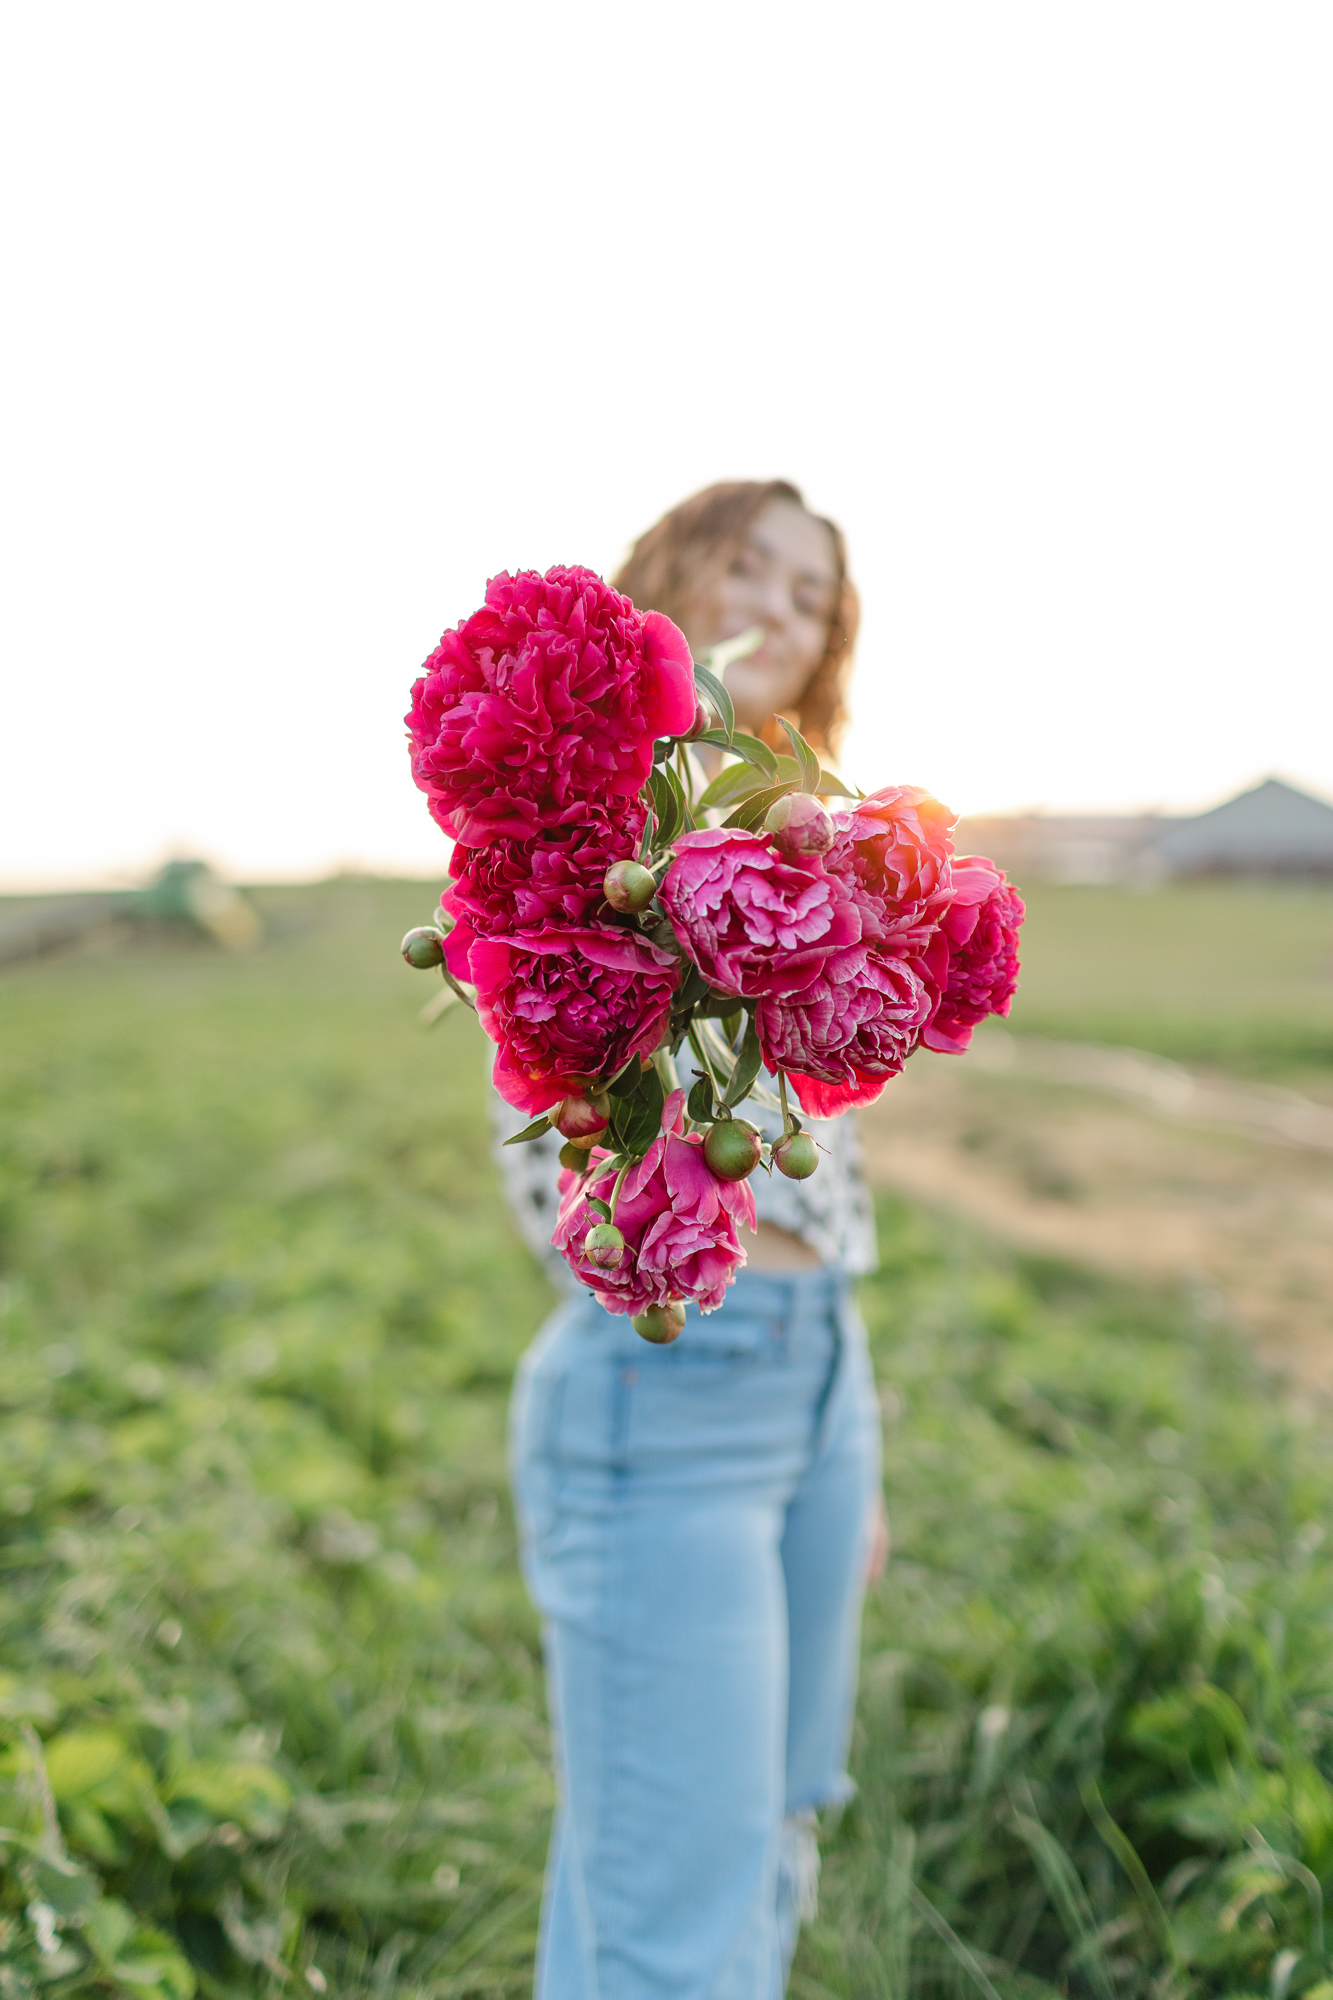 Female holding flowers in a field wearing jeans.